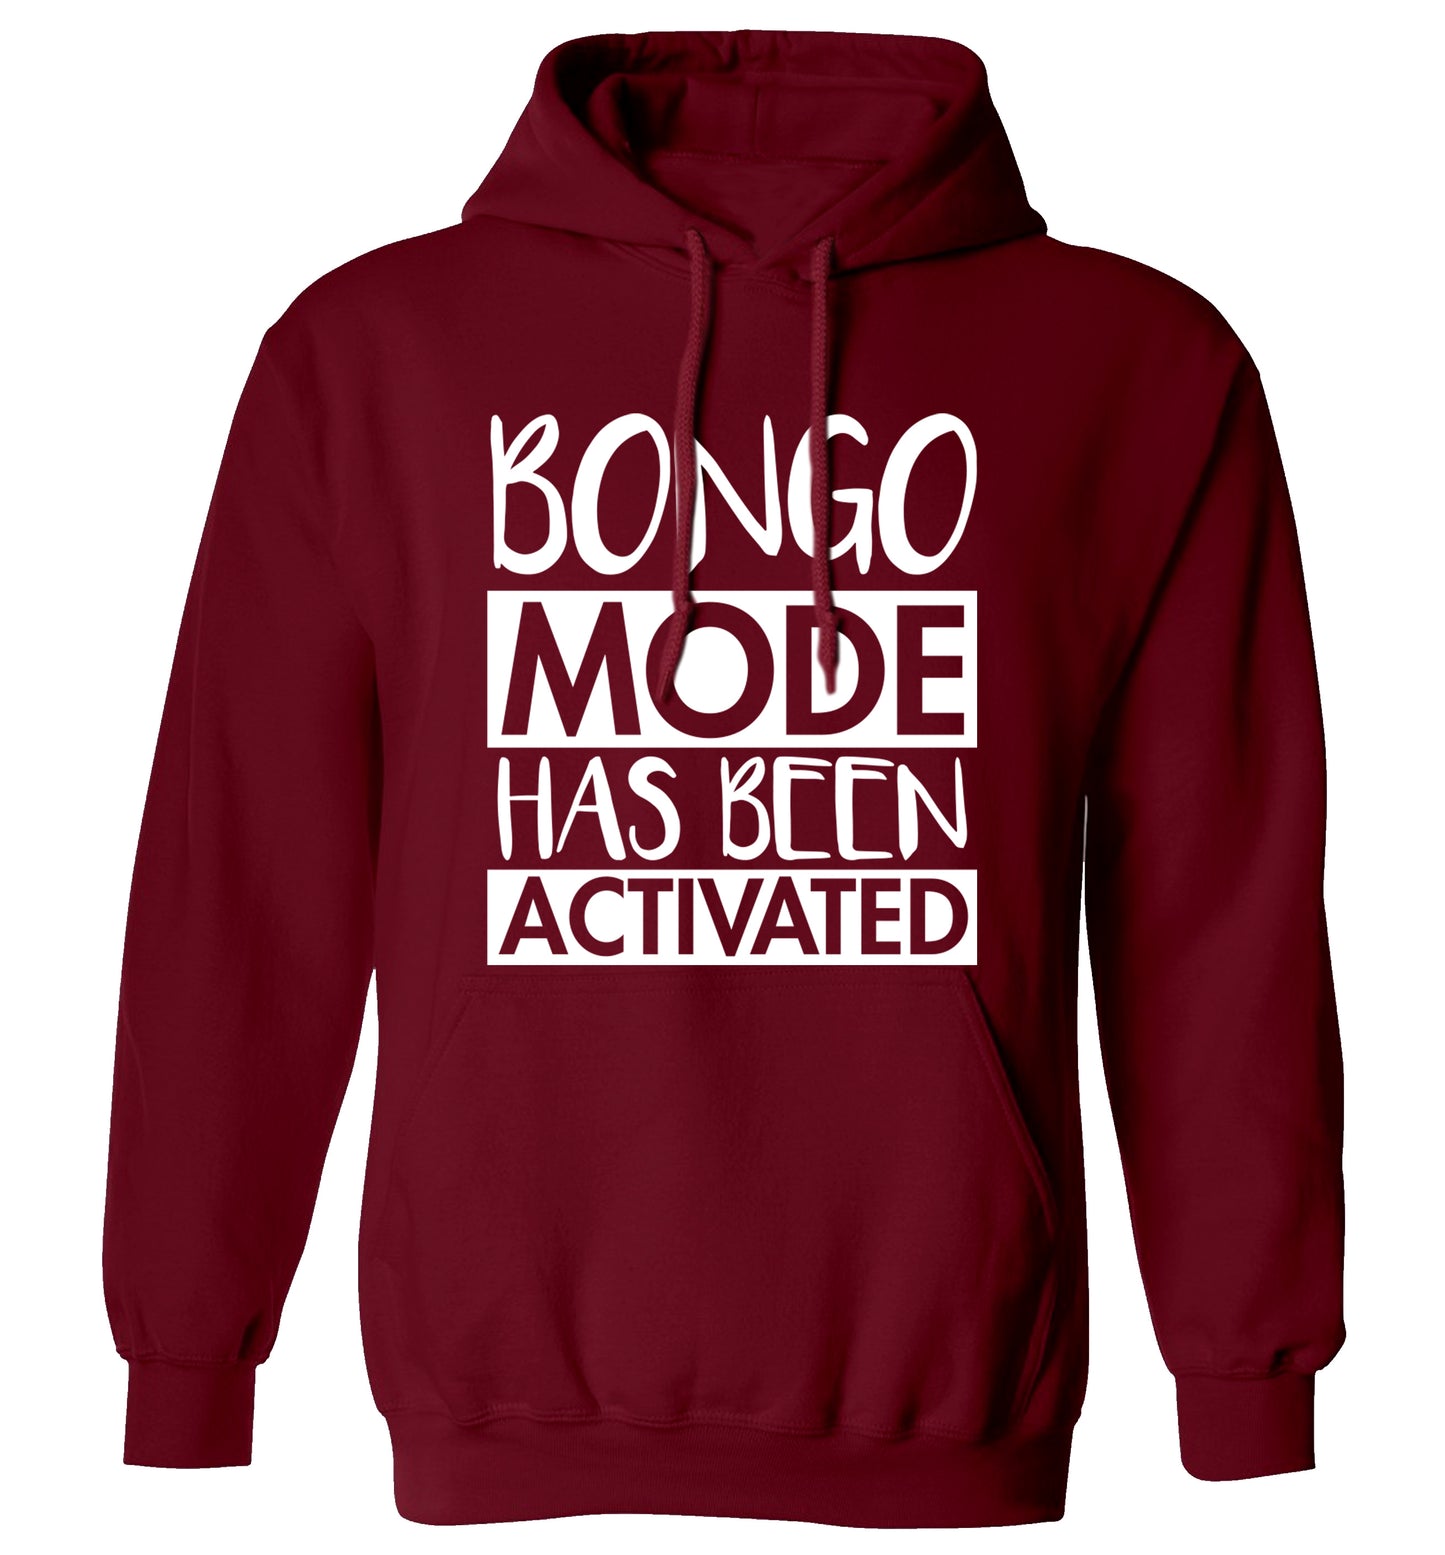 Bongo mode has been activated adults unisexmaroon hoodie 2XL